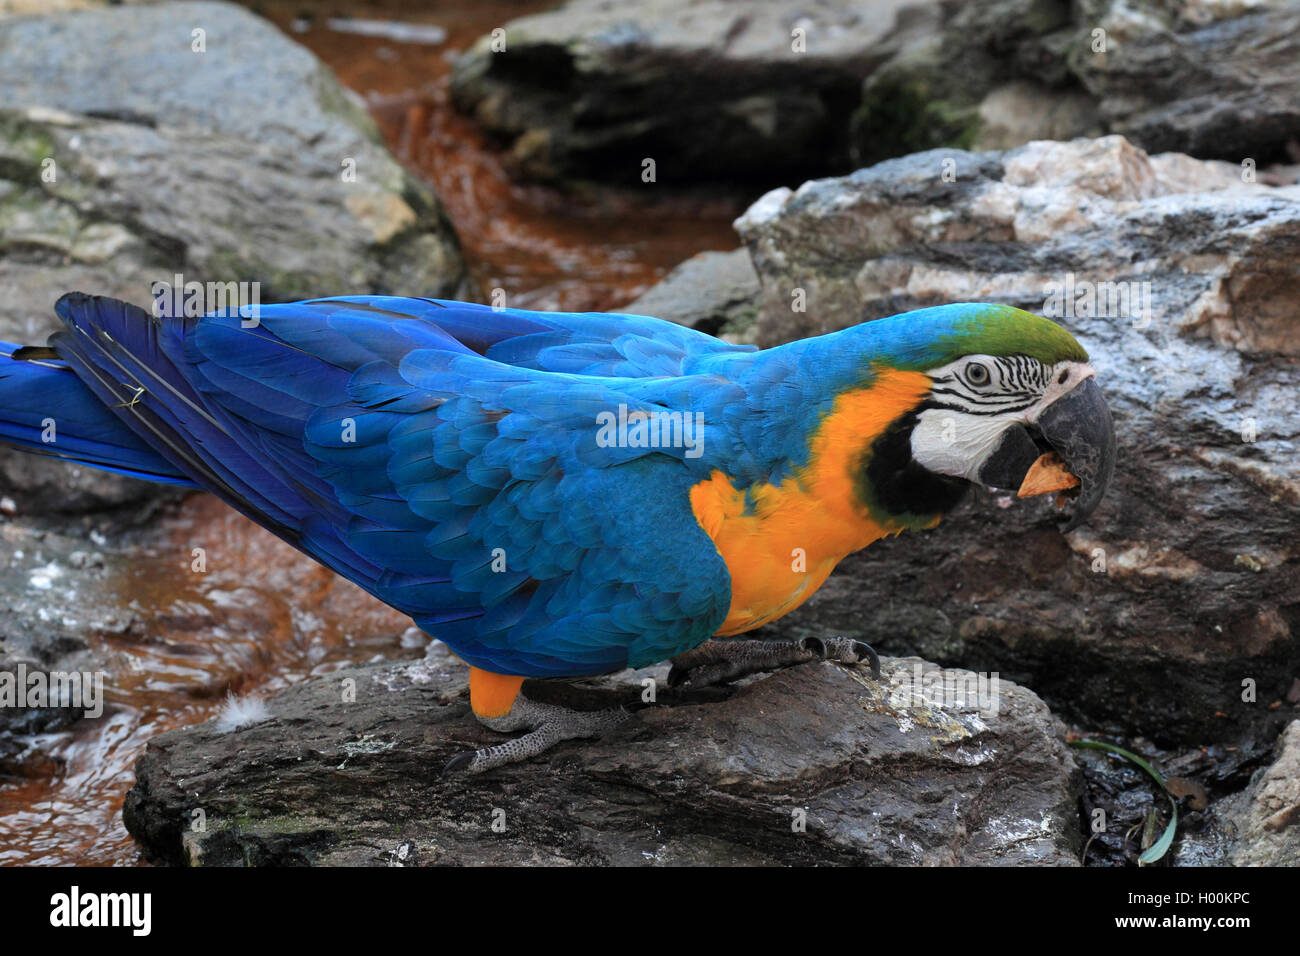 Blaue und gelbe Ara, blau und gold Macaw, Blau und Gold macaw, blau-gelb Ara (Ara ararauna), auf einem Stein, Seitenansicht Stockfoto